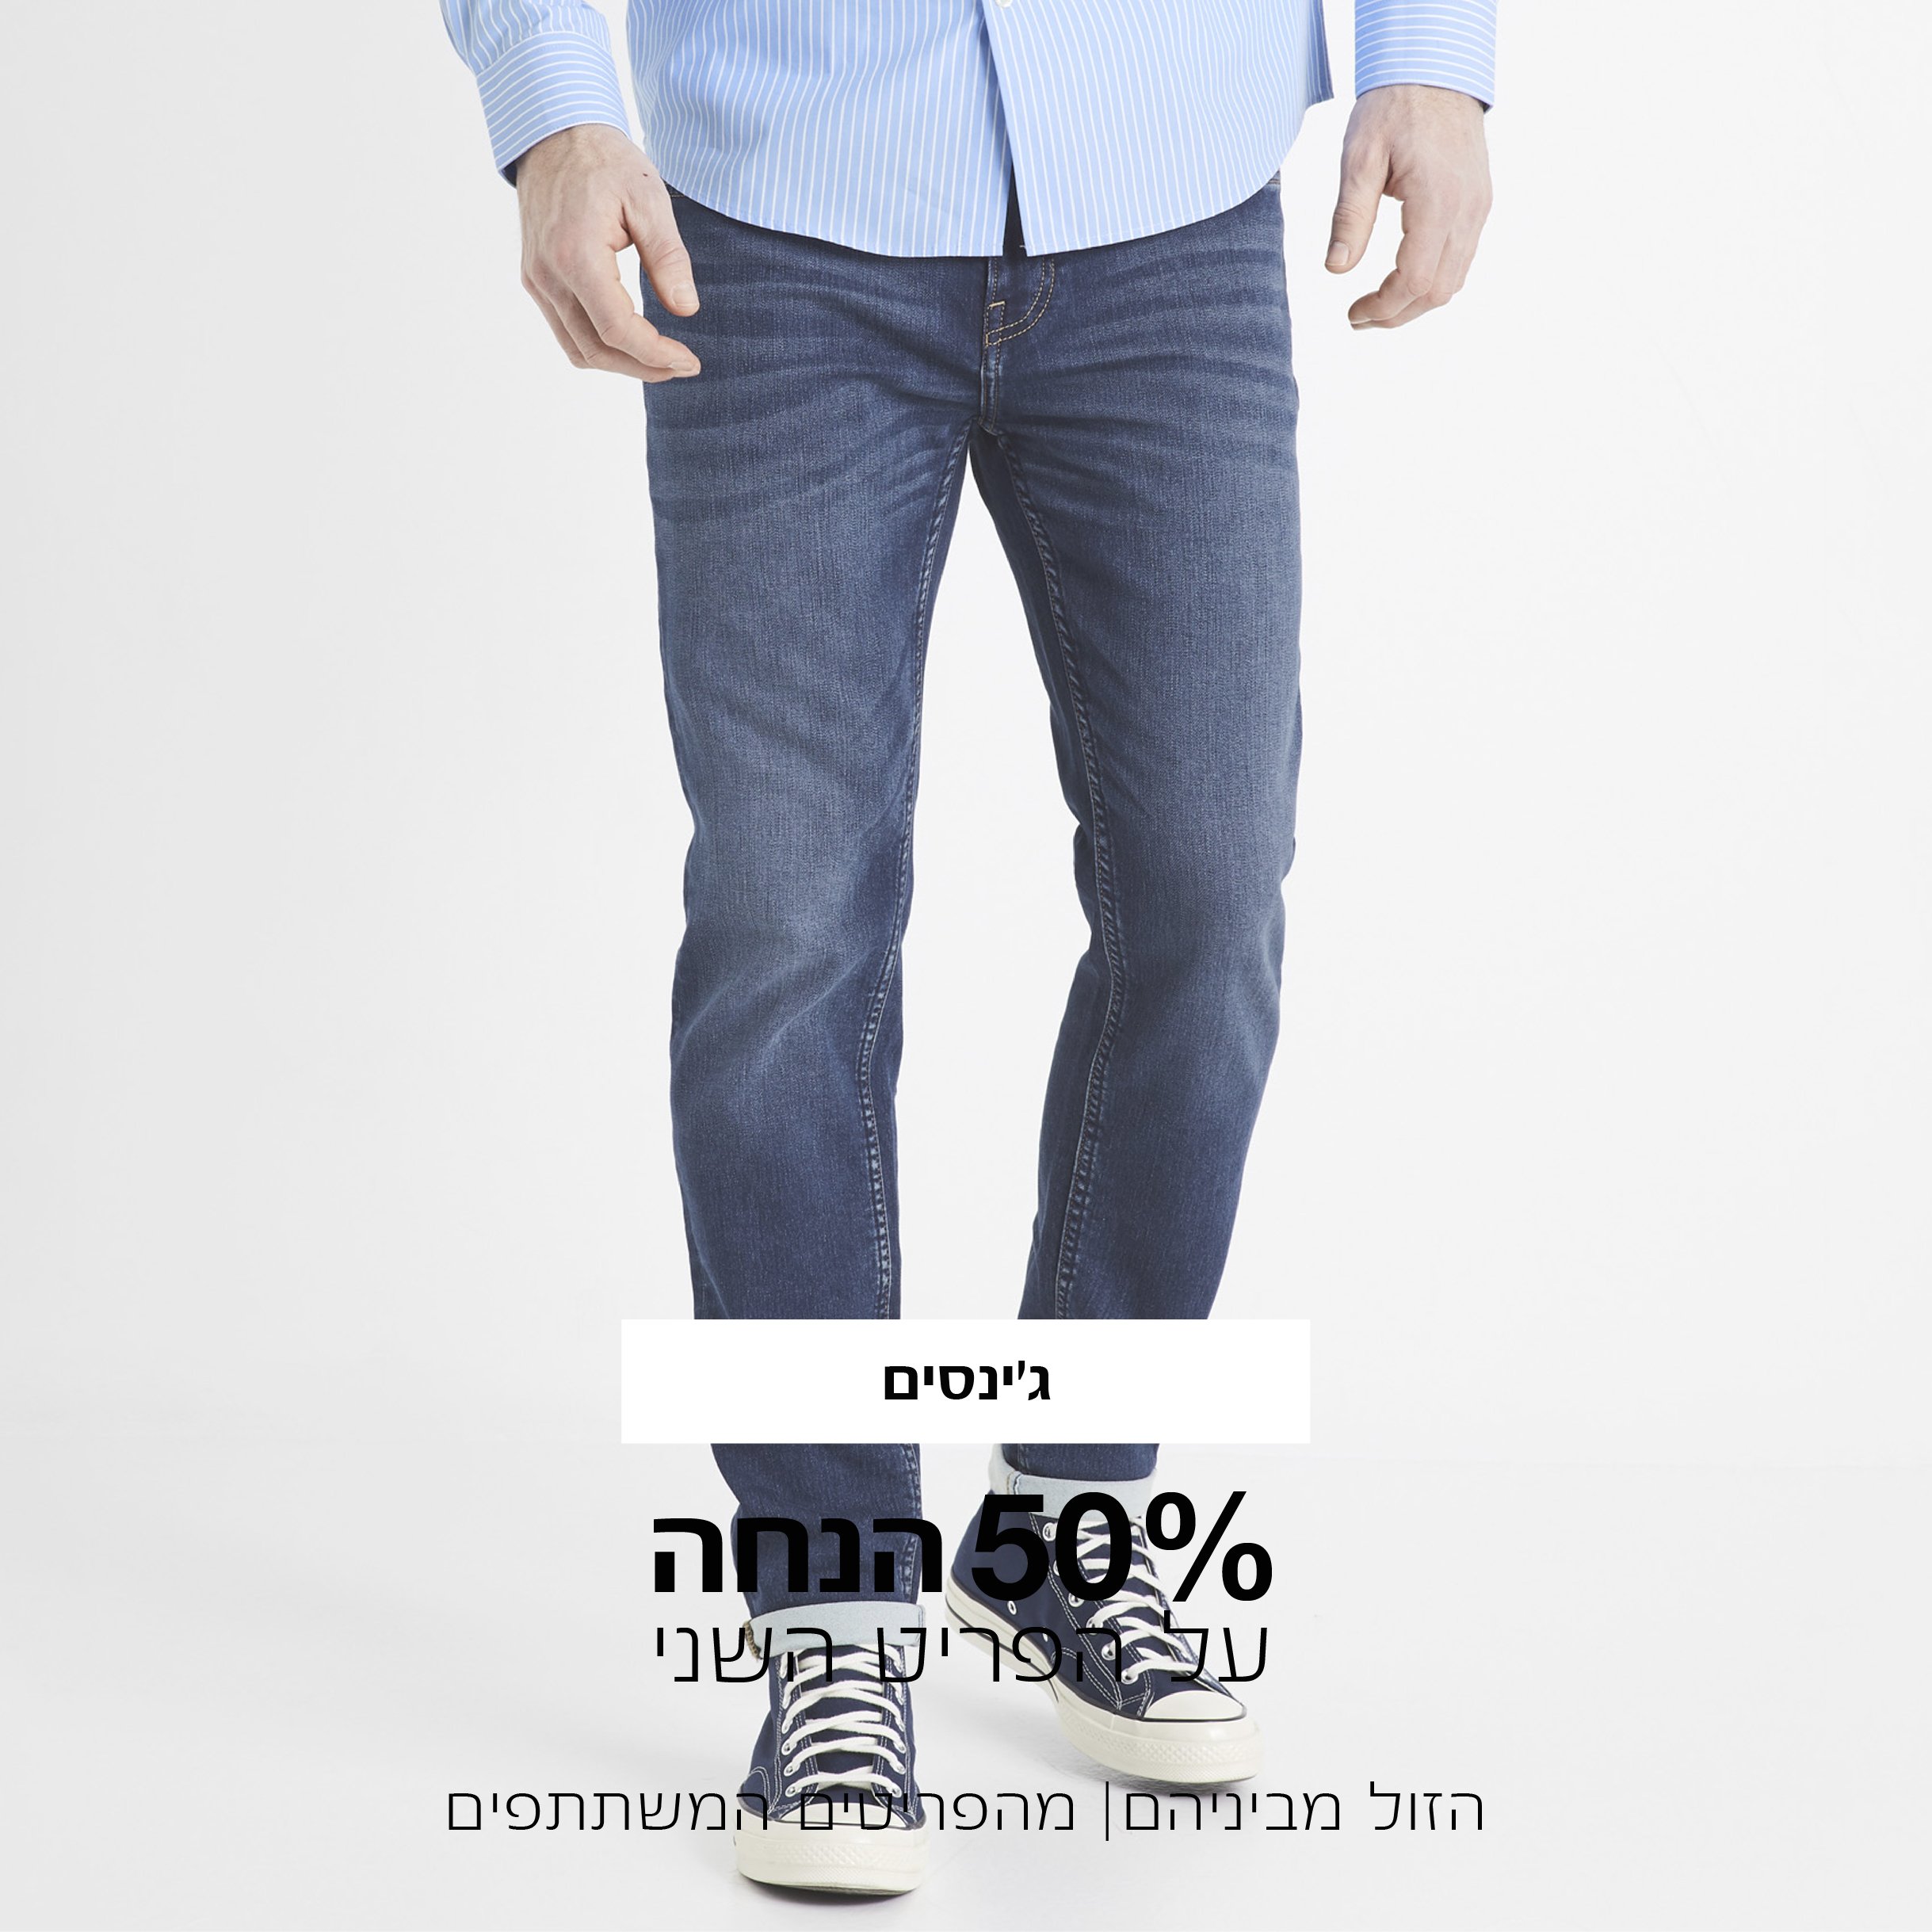 קטגורית ג'ינסים השני ב50% הנחה